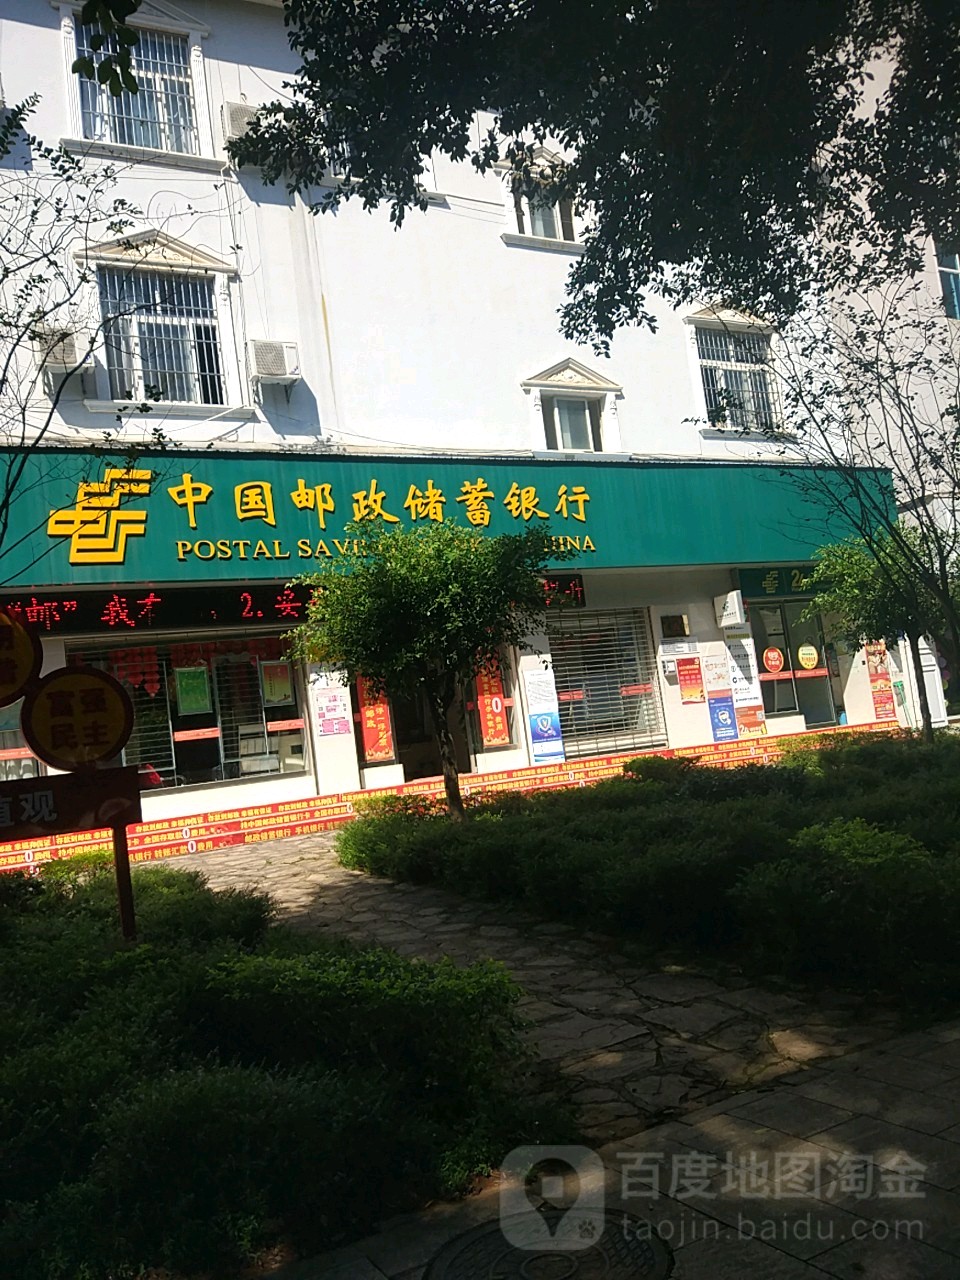 中國郵政儲蓄銀行atm(公主路郵政支局)